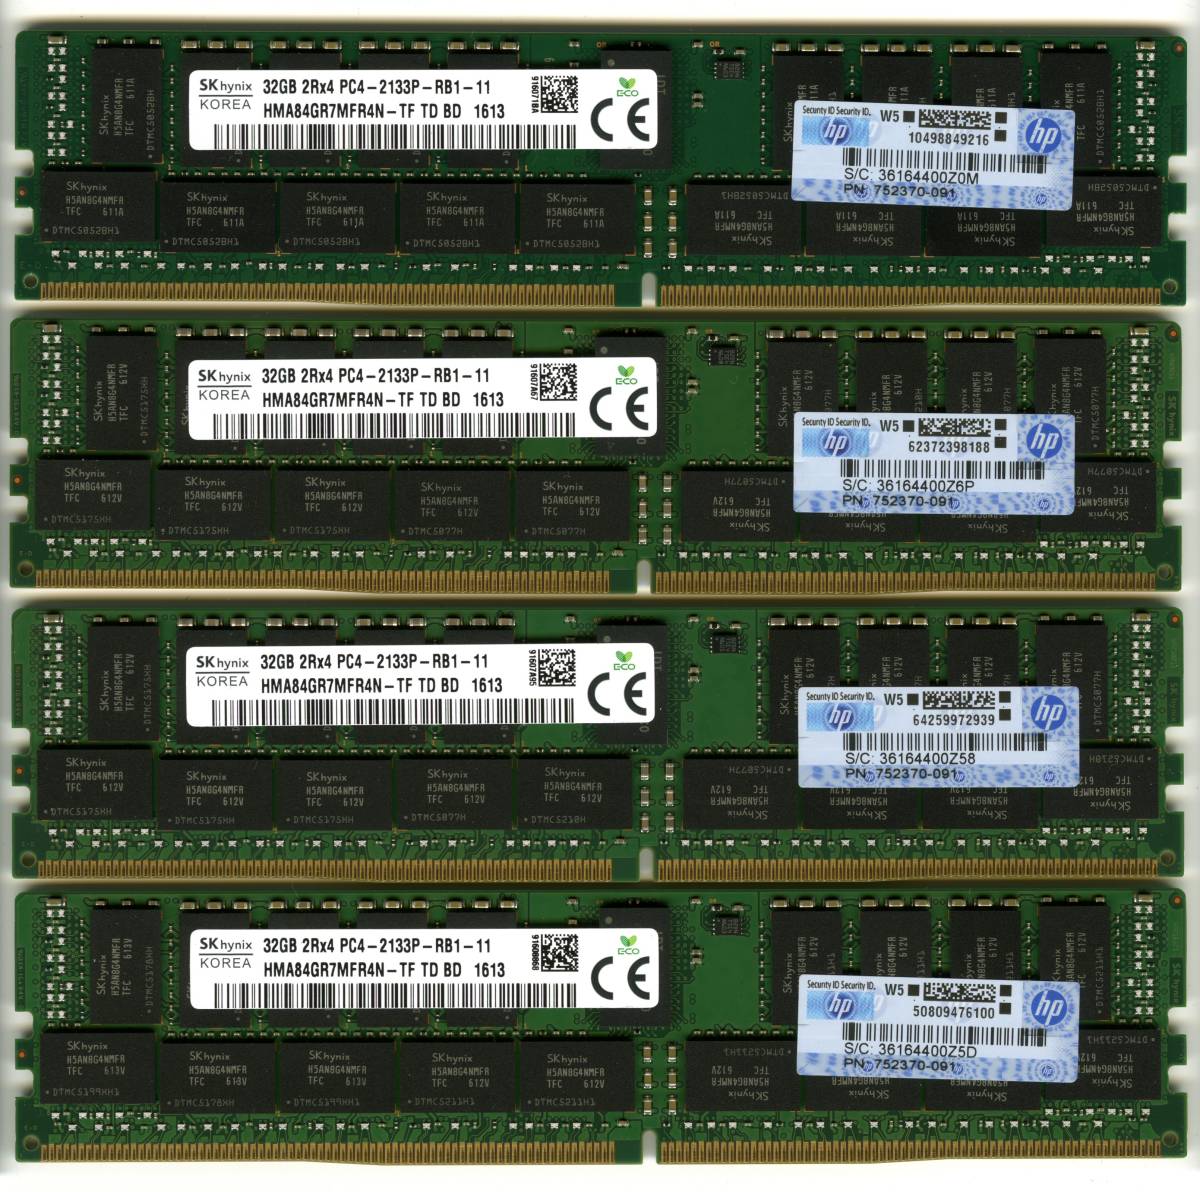 HP純正 SKhynix、DDR4-2133、ECC Registered、32GB×4枚セットで128GB